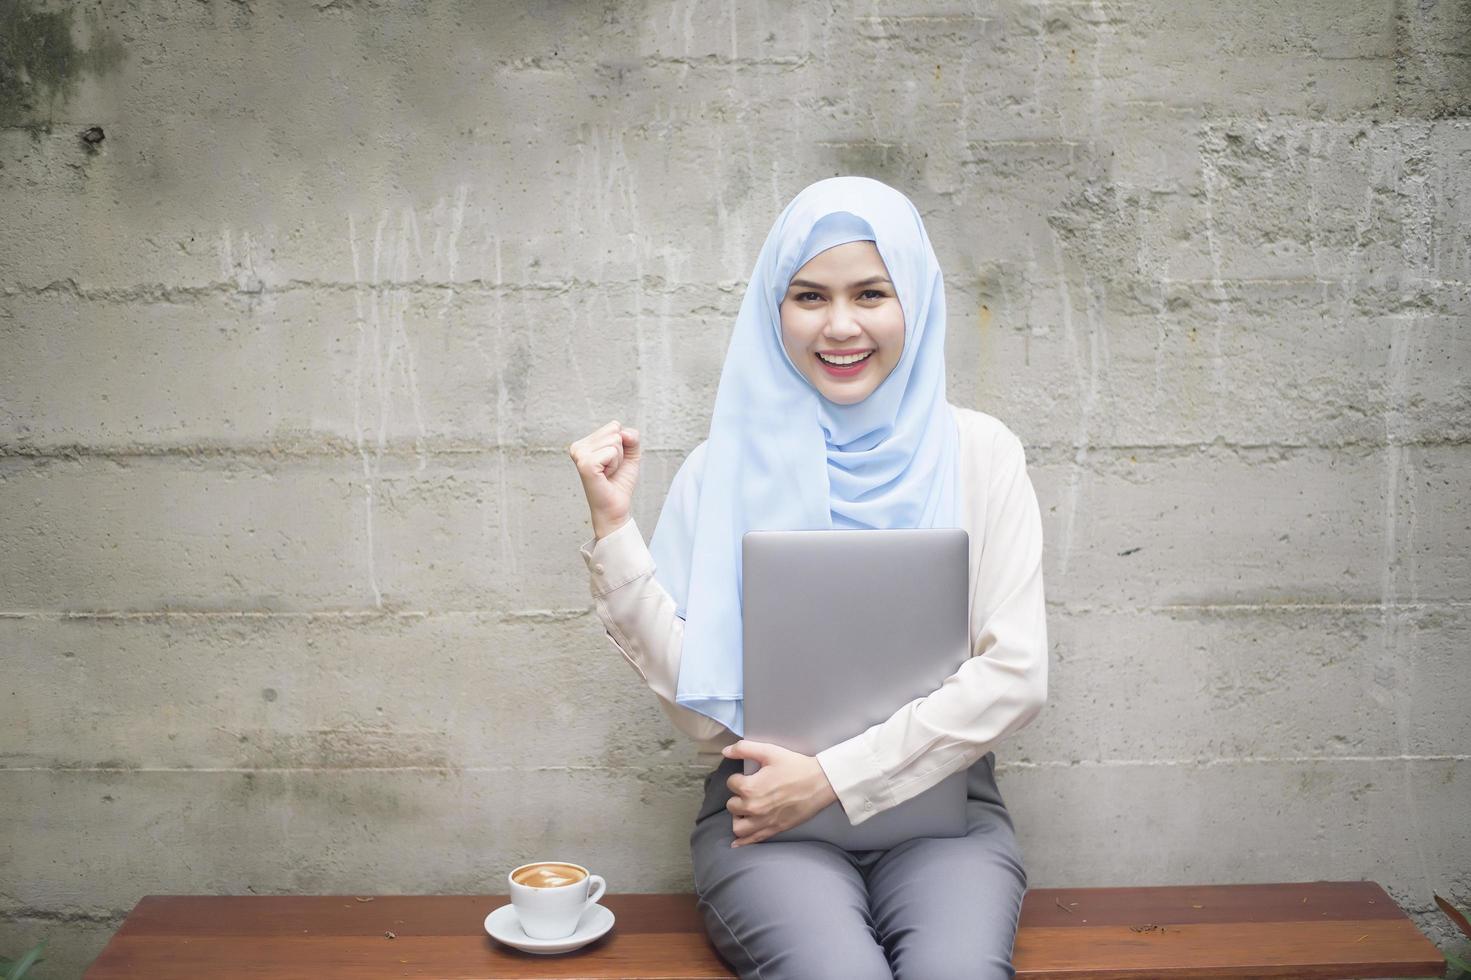 mulher muçulmana com hijab está trabalhando com computador portátil na cafeteria foto